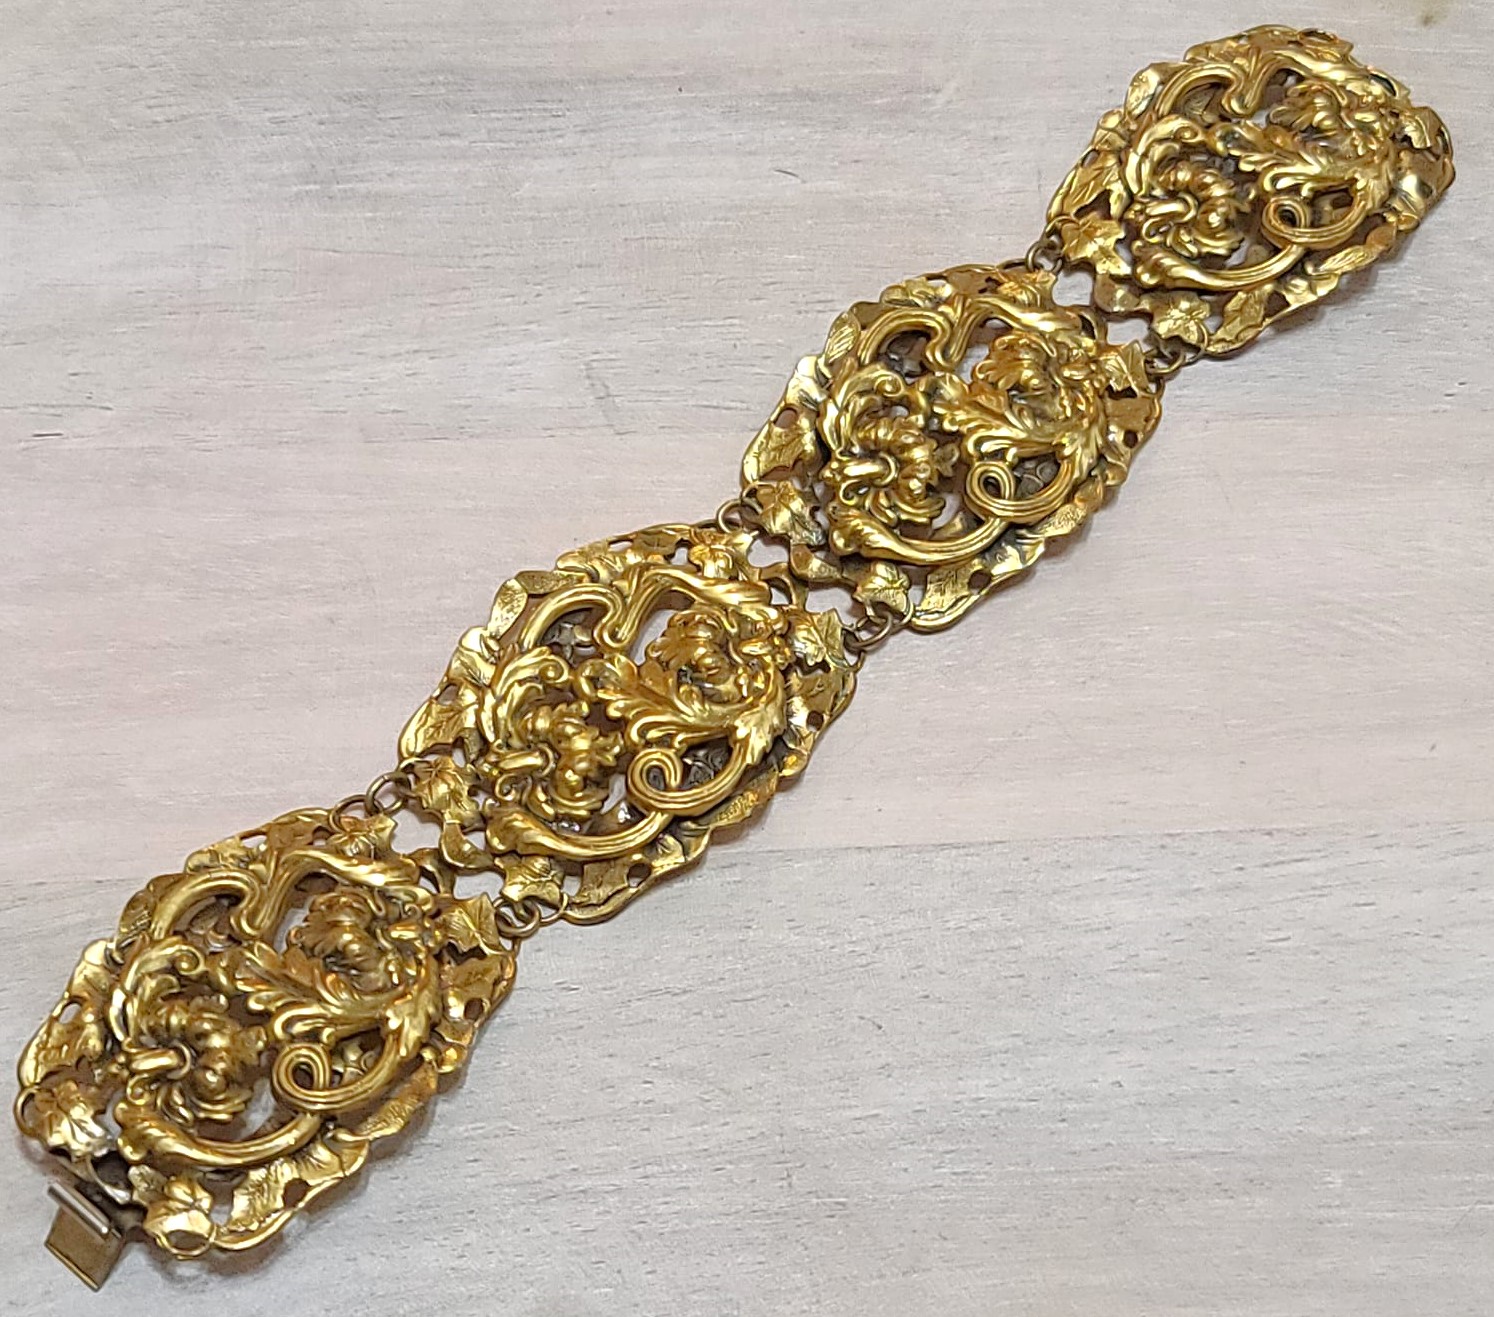 Vintage repousse bracelet, ornate detailed scroll work panel bracelet